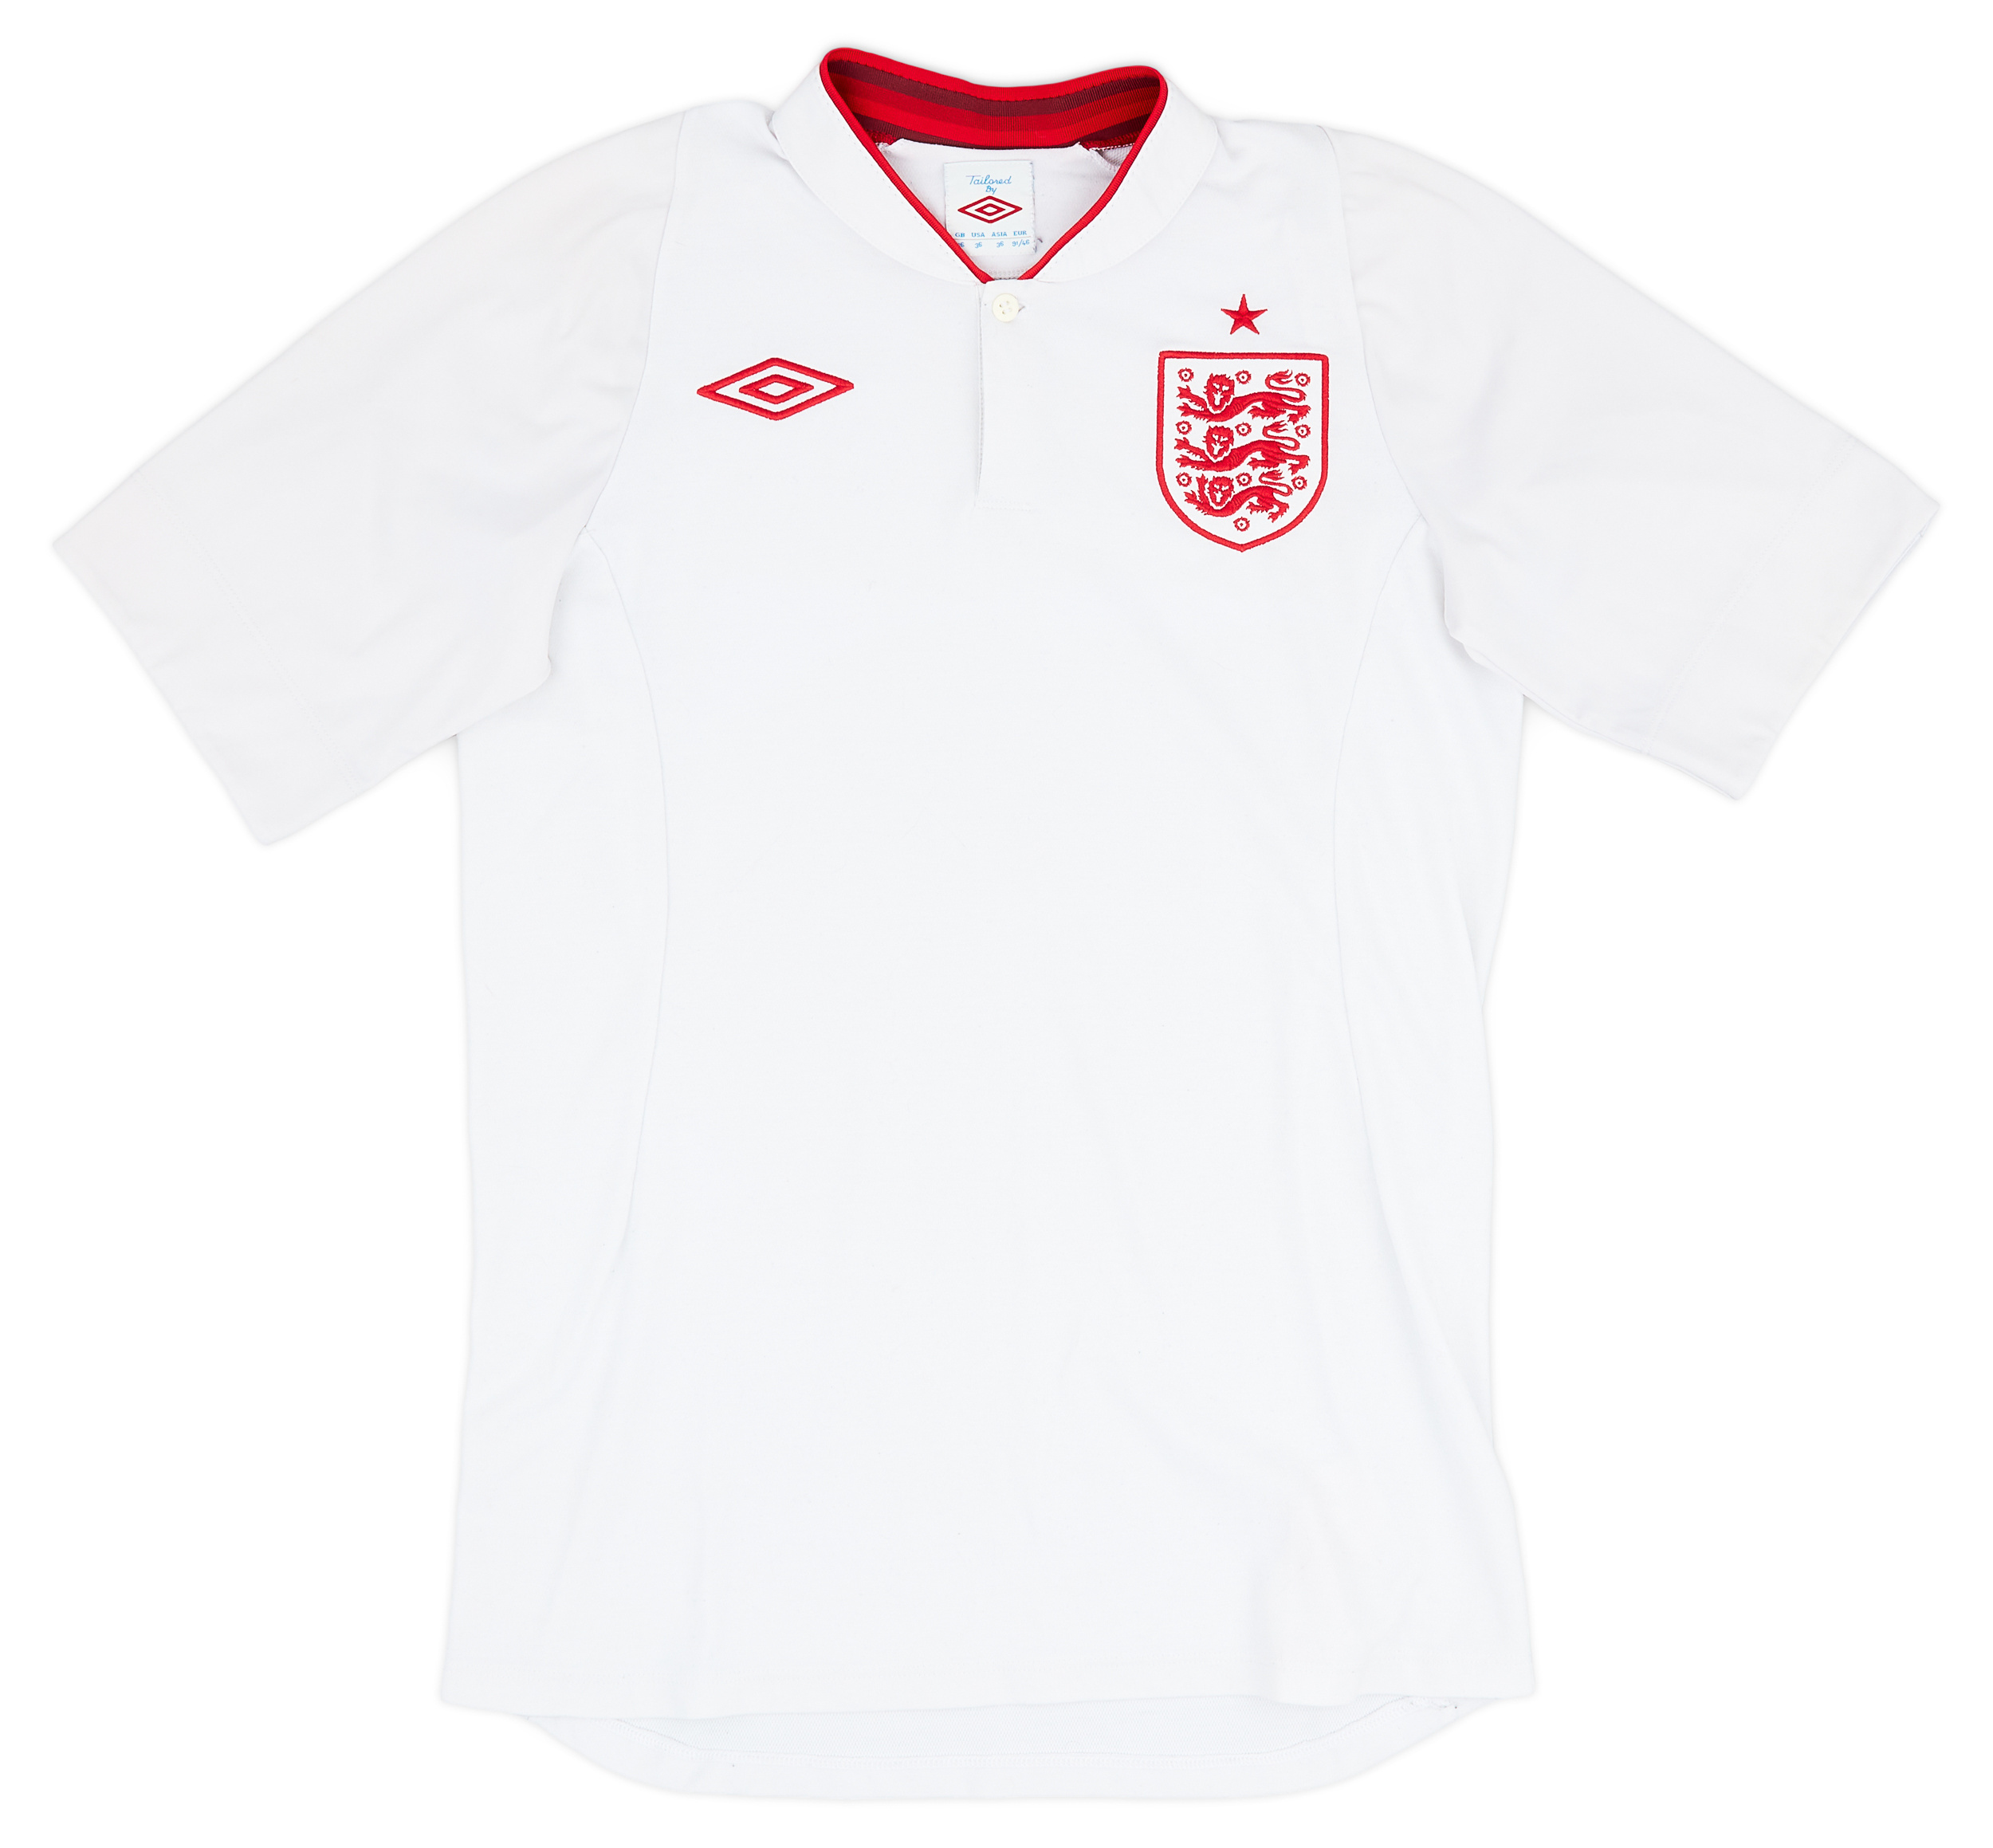 2012-13 England Home Shirt - 6/10 - ()